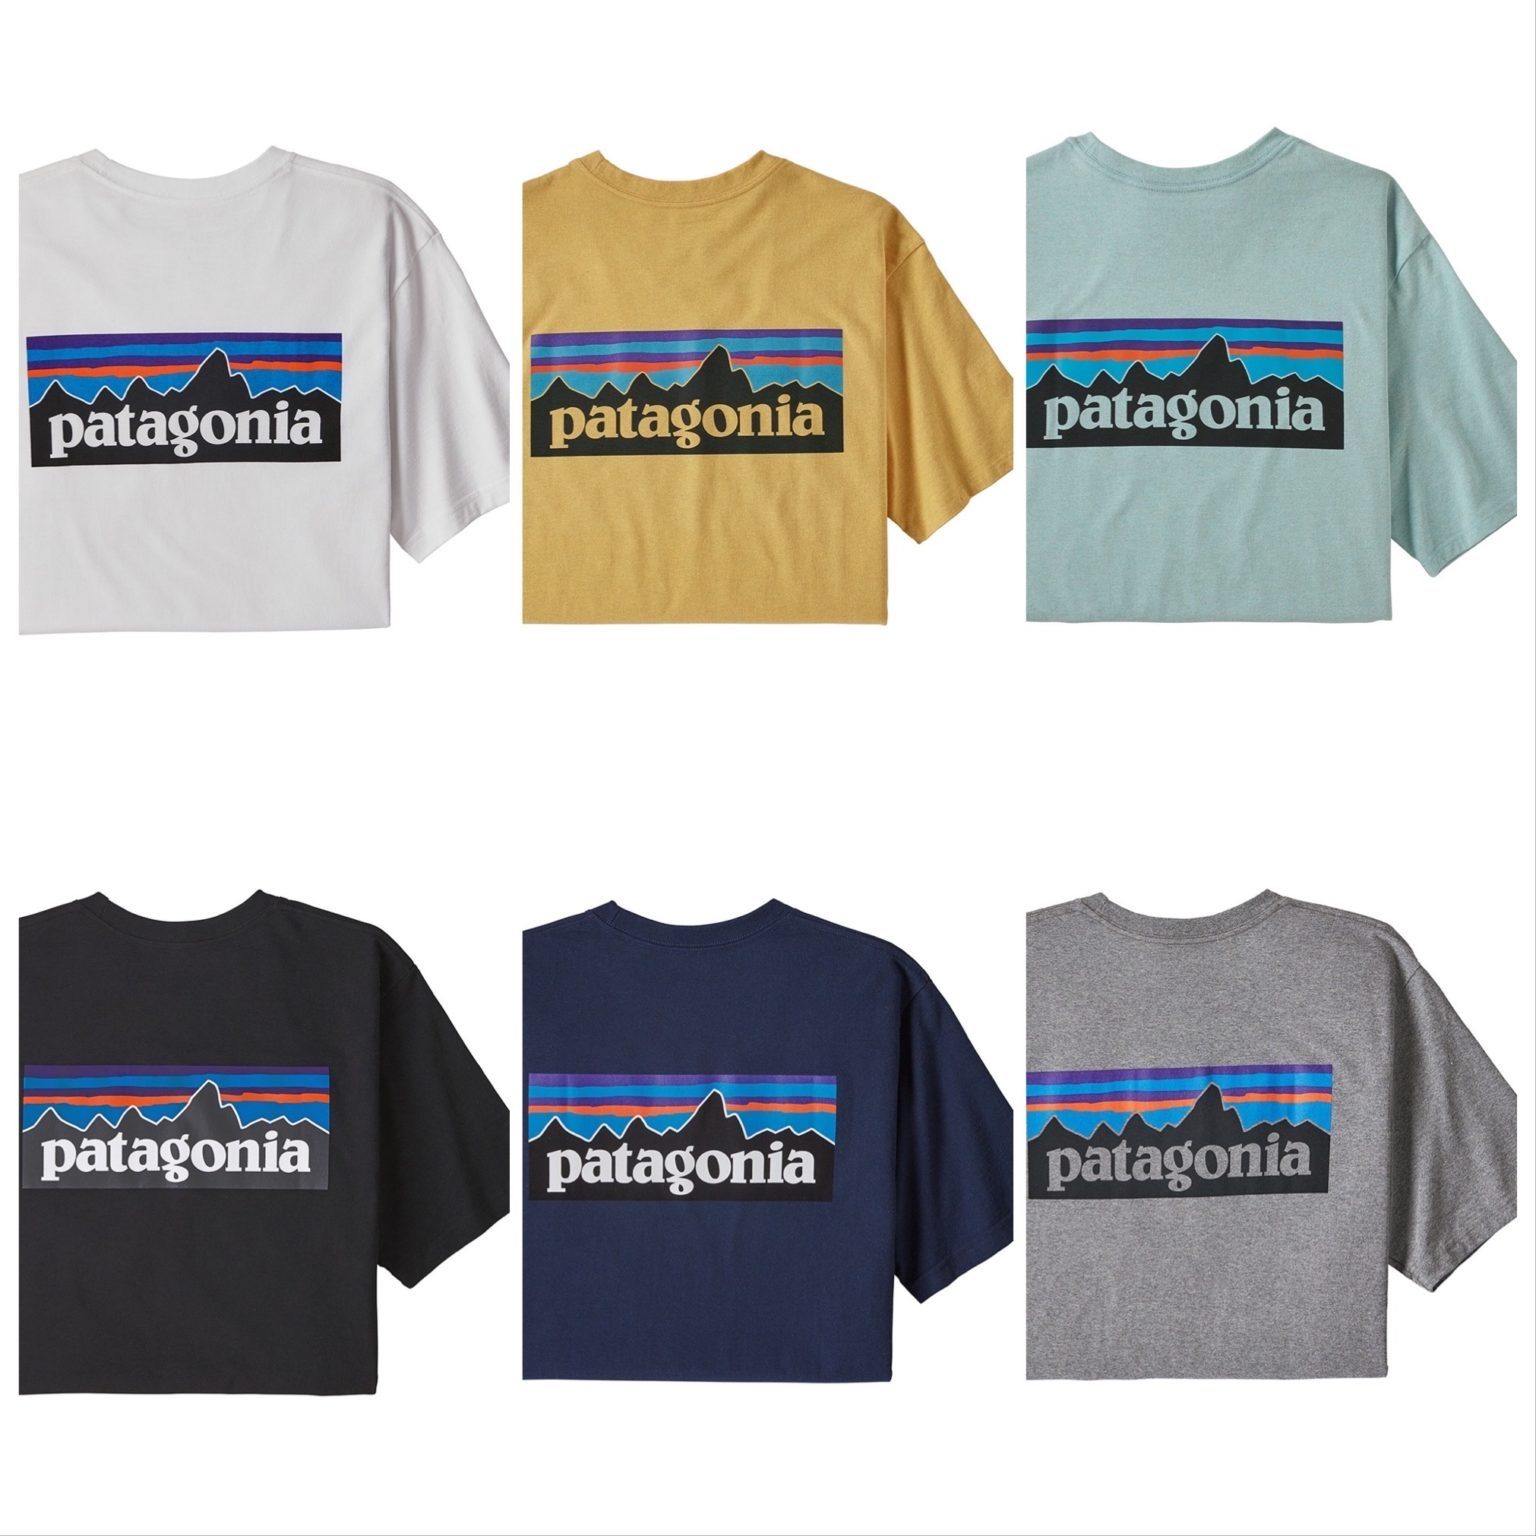 速報 パタゴニアの人気のロゴtシャツ P 6 ロゴ レスポンシビリティー が Sunday Mountain で販売中 A Ap Hope This Helps